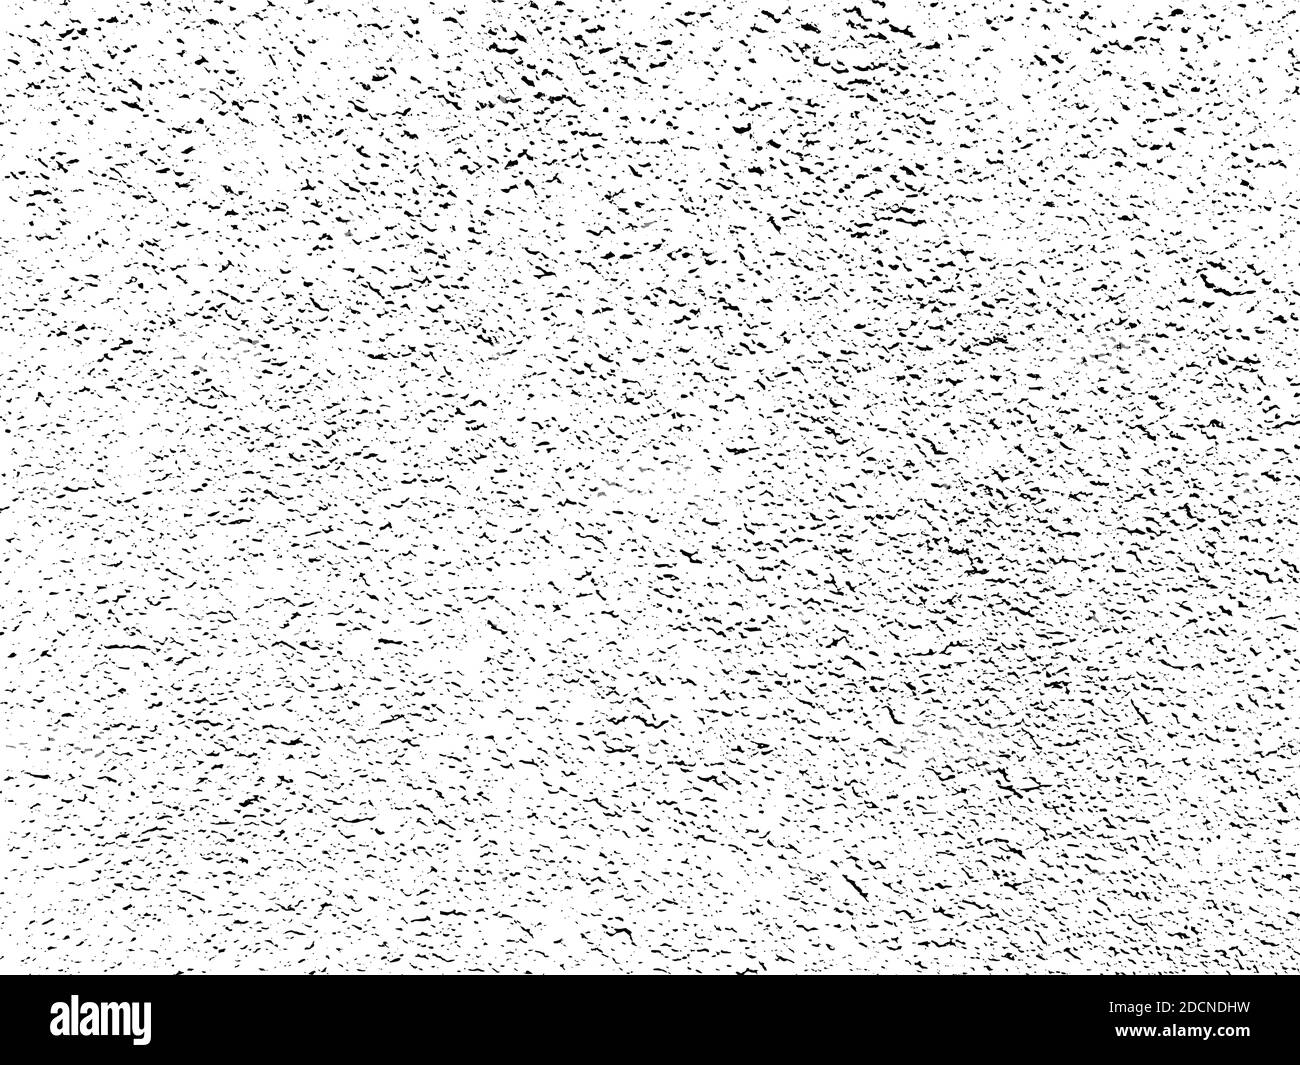 Grunge Hintergrund. Grungy subtile abstrakte texturierte Wirkung Oberfläche, Alter beschädigt Material unordentlich Wand Kratzer und Flecken, Tapete Vektor-Textur Stock Vektor